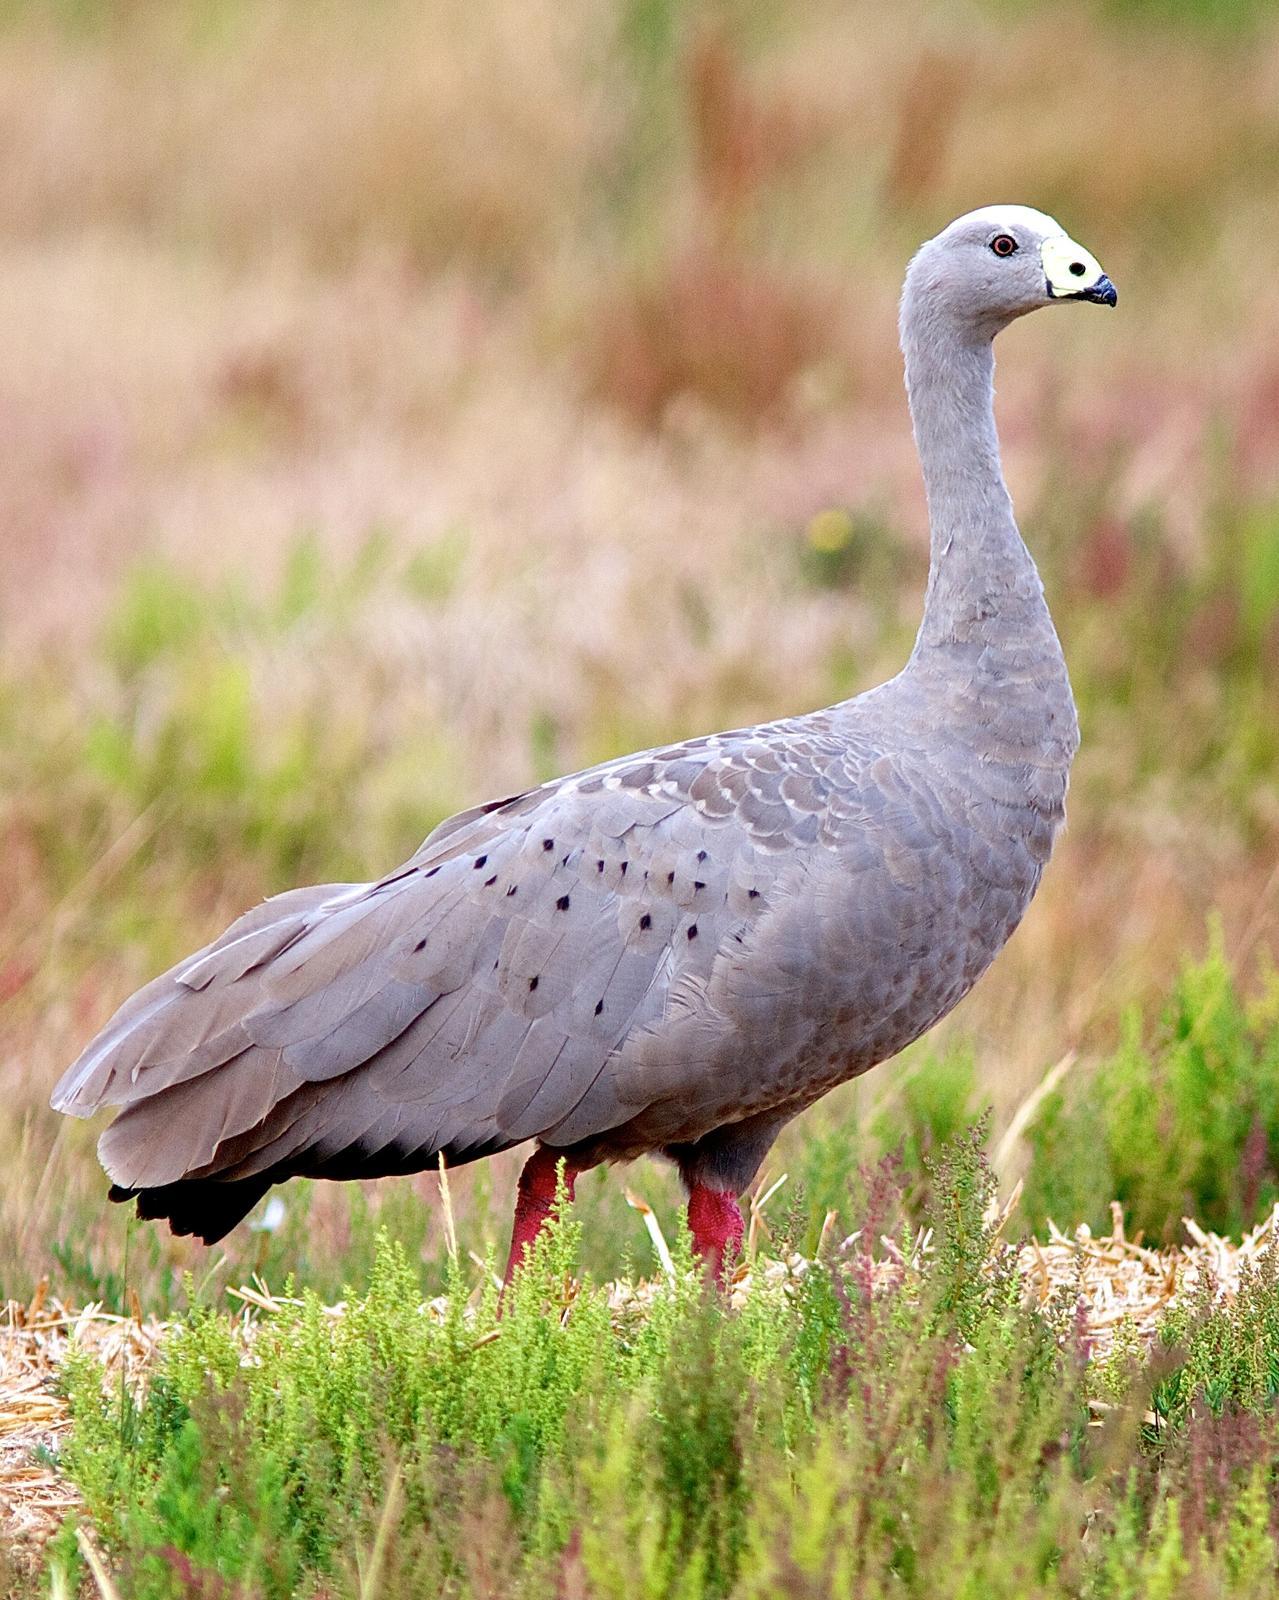 Cape Barren Goose Photo by Luke Shelley